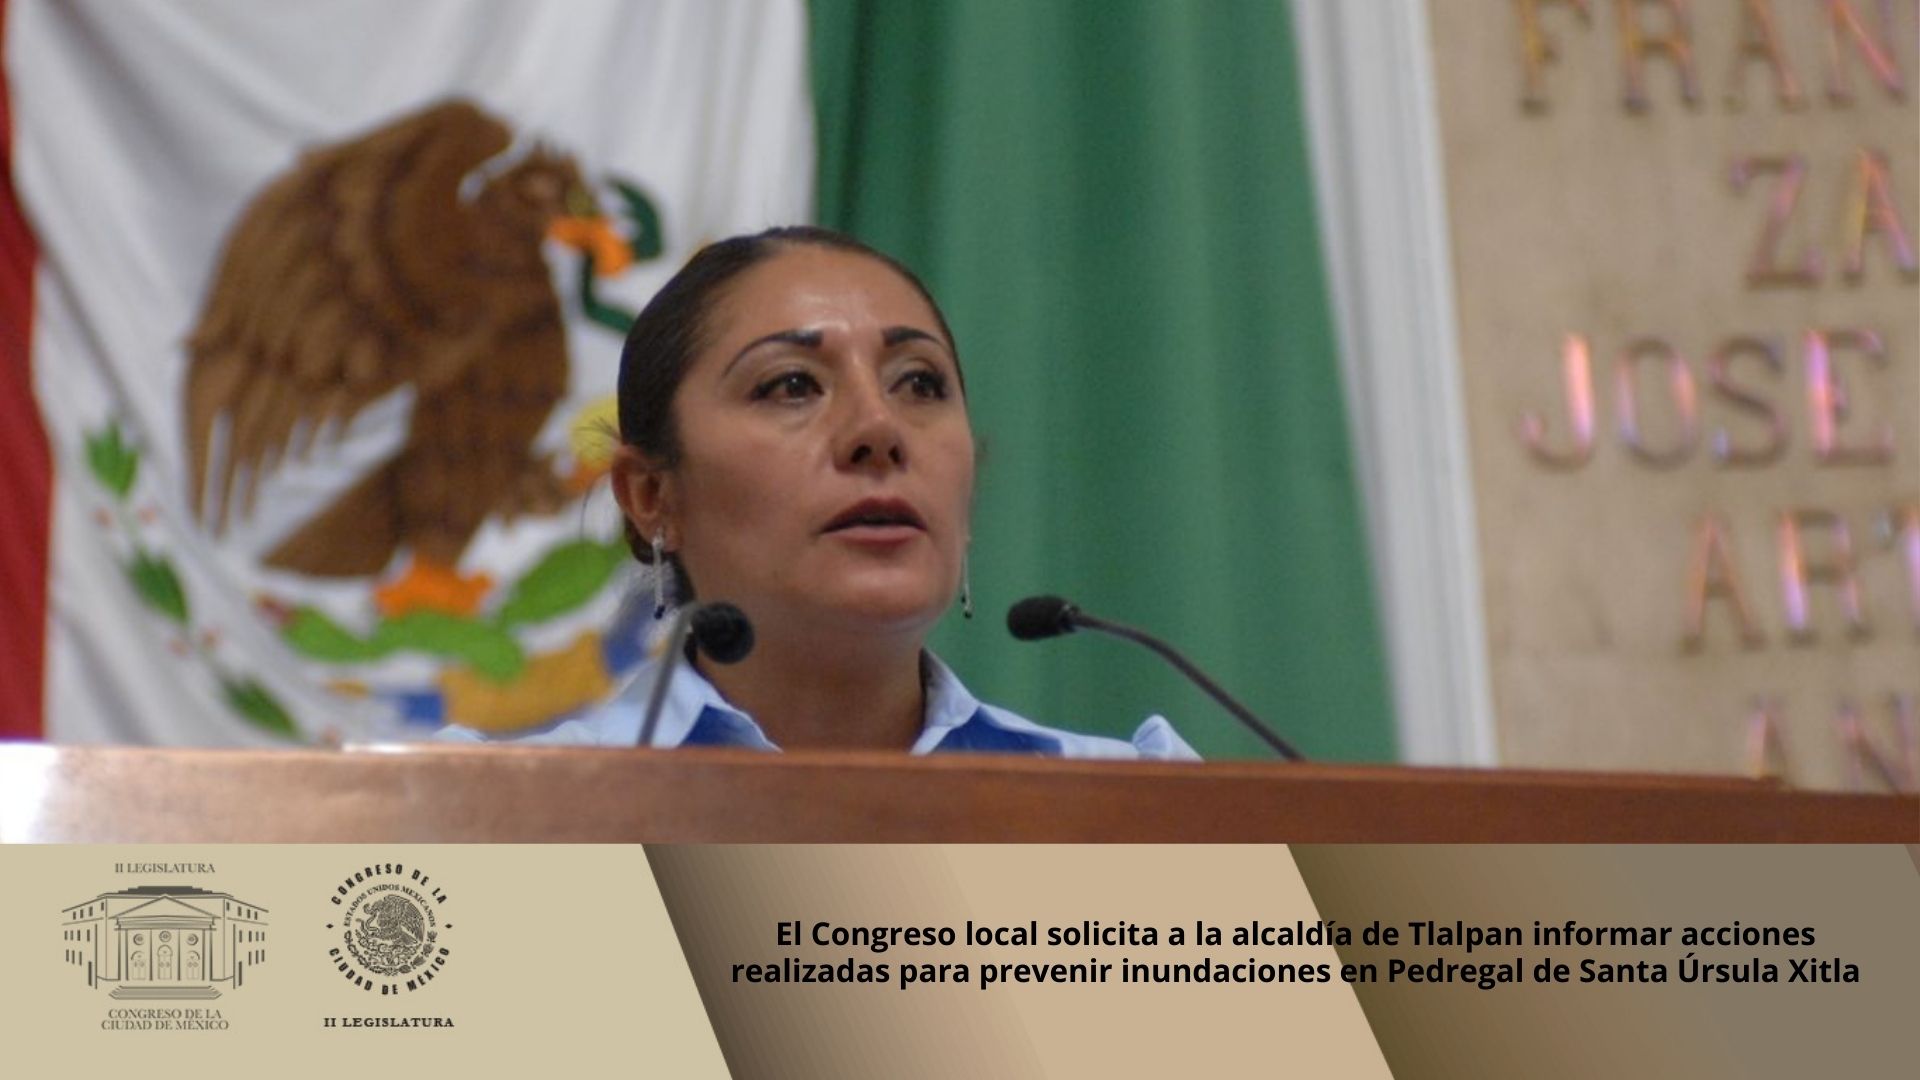 El Congreso local solicita a la alcaldía de Tlalpan informar acciones realizadas para prevenir inundaciones en Pedregal de Santa Úrsula Xitla